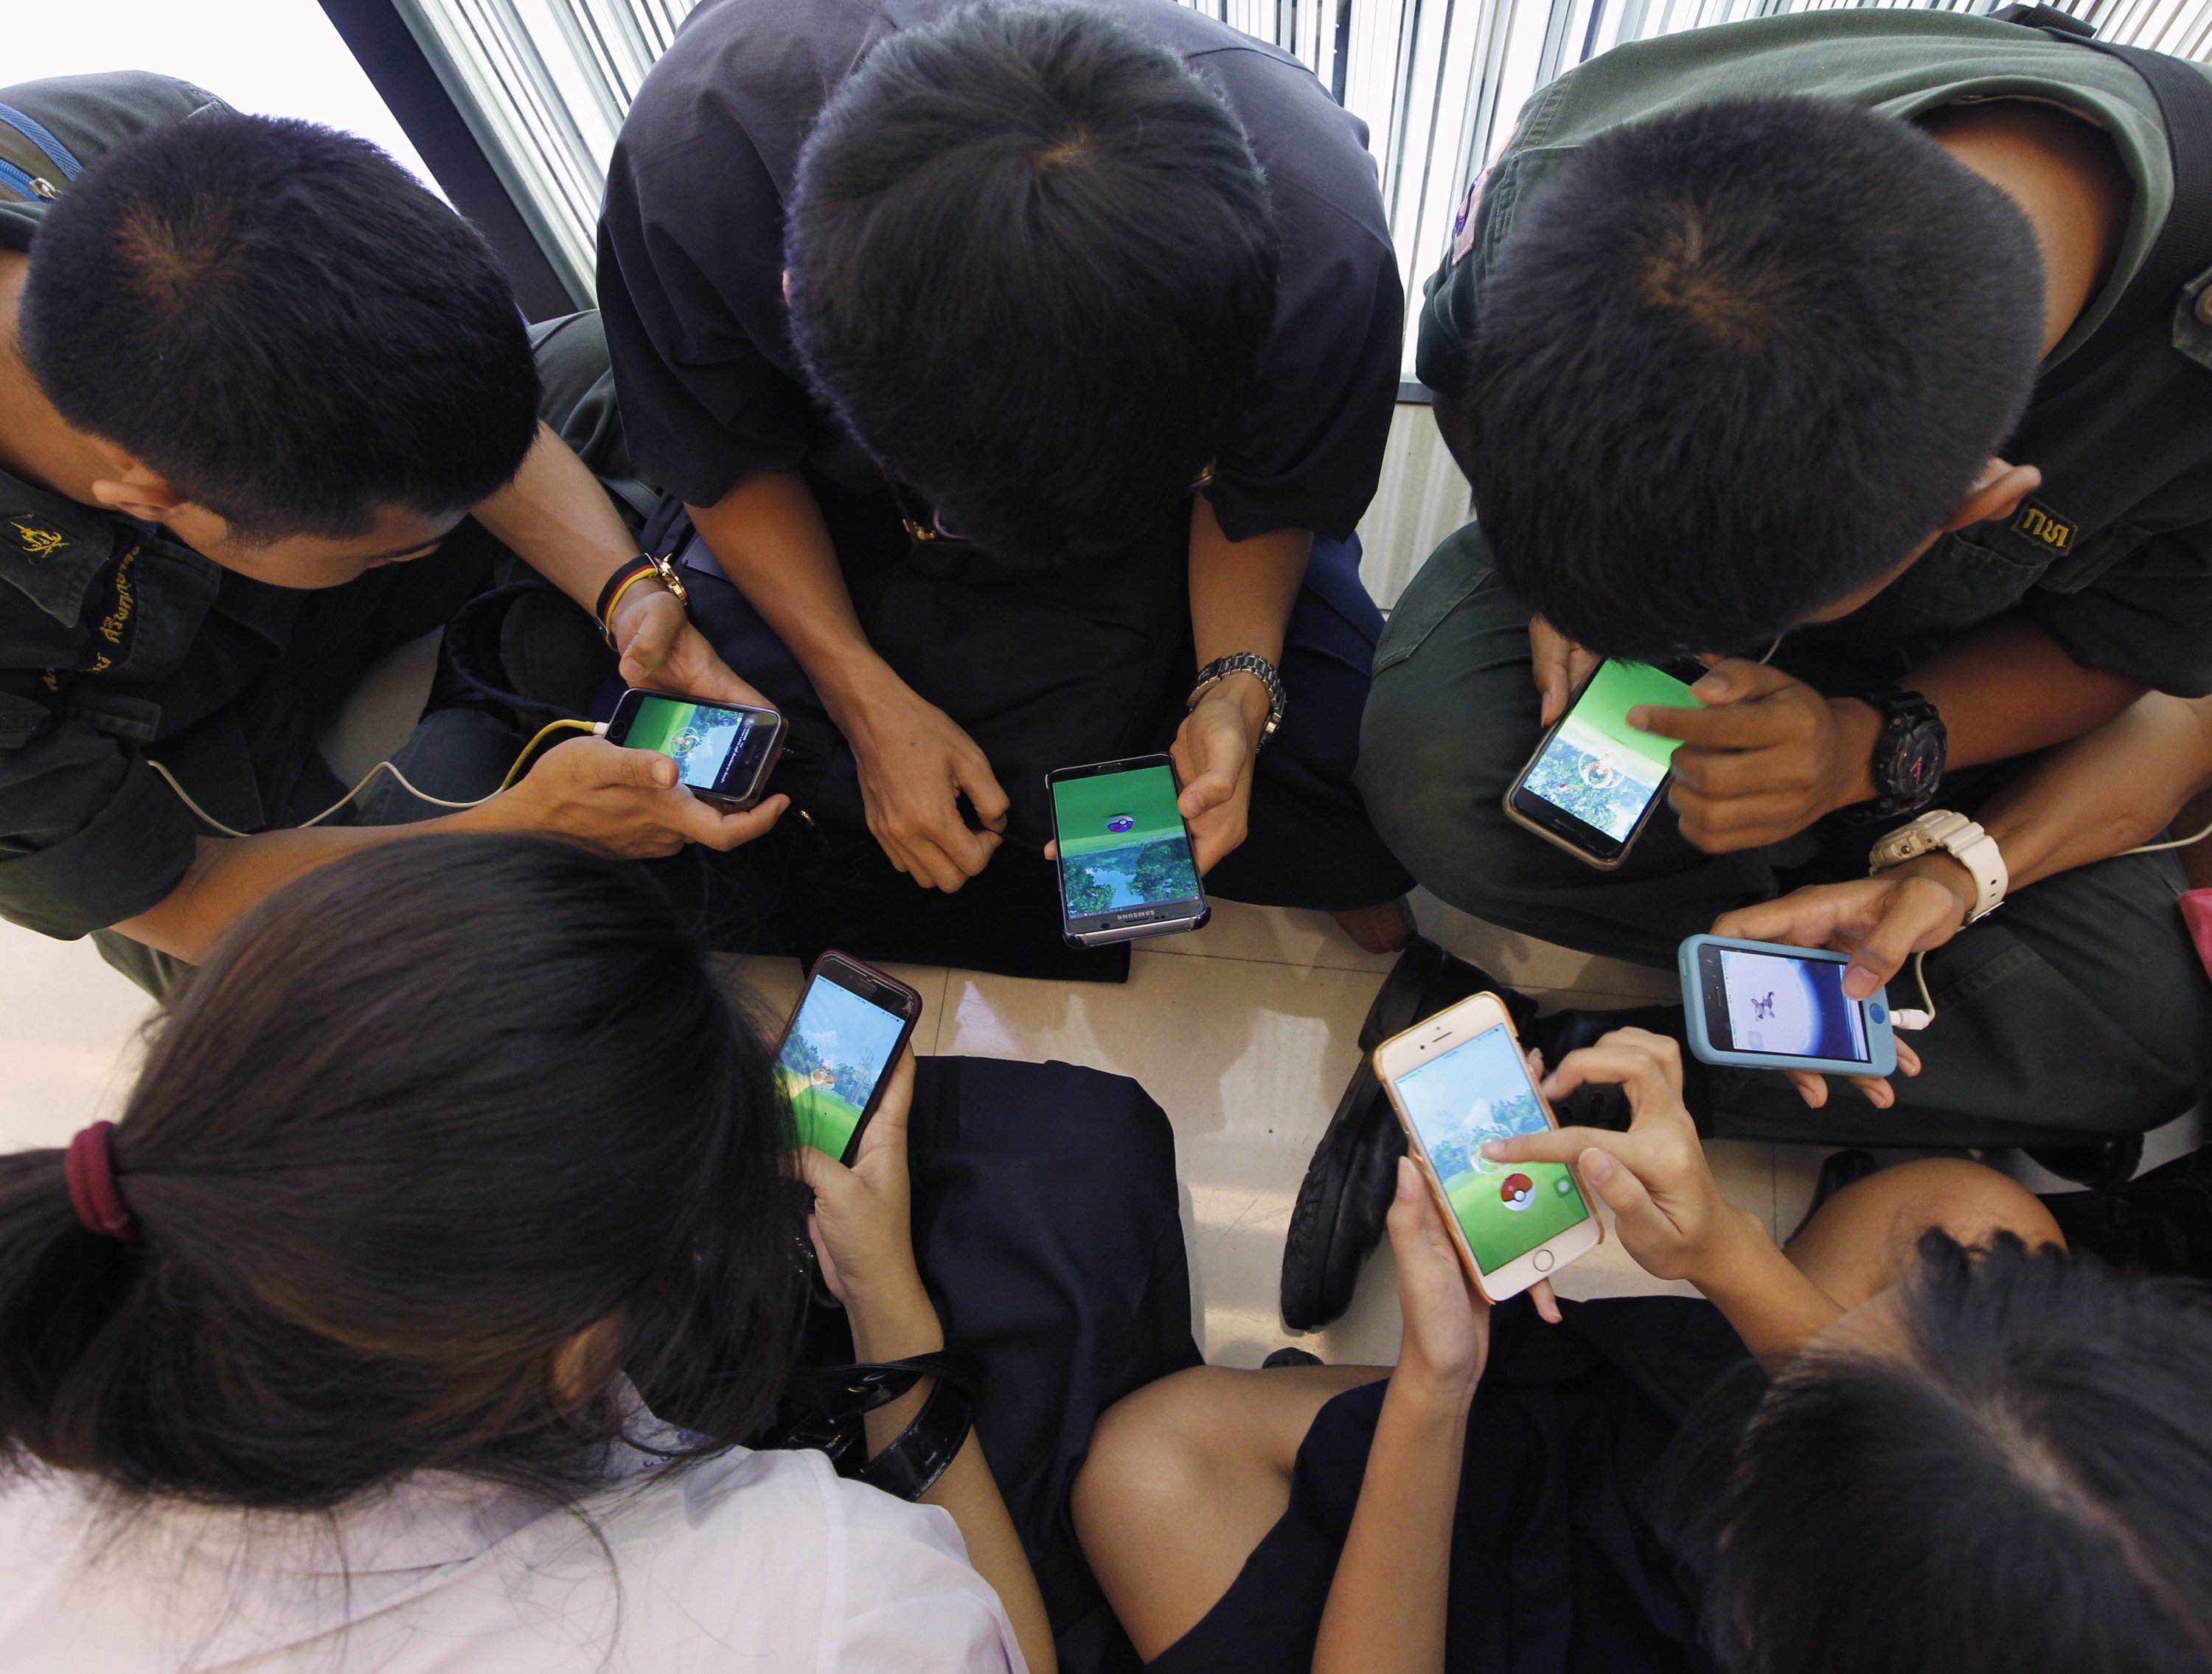 Das Smartphone hat völlig neue Kommunikationsmöglichkeiten geschaffen: Im Bild junge Thailänder, die Pokemon Go spielen.